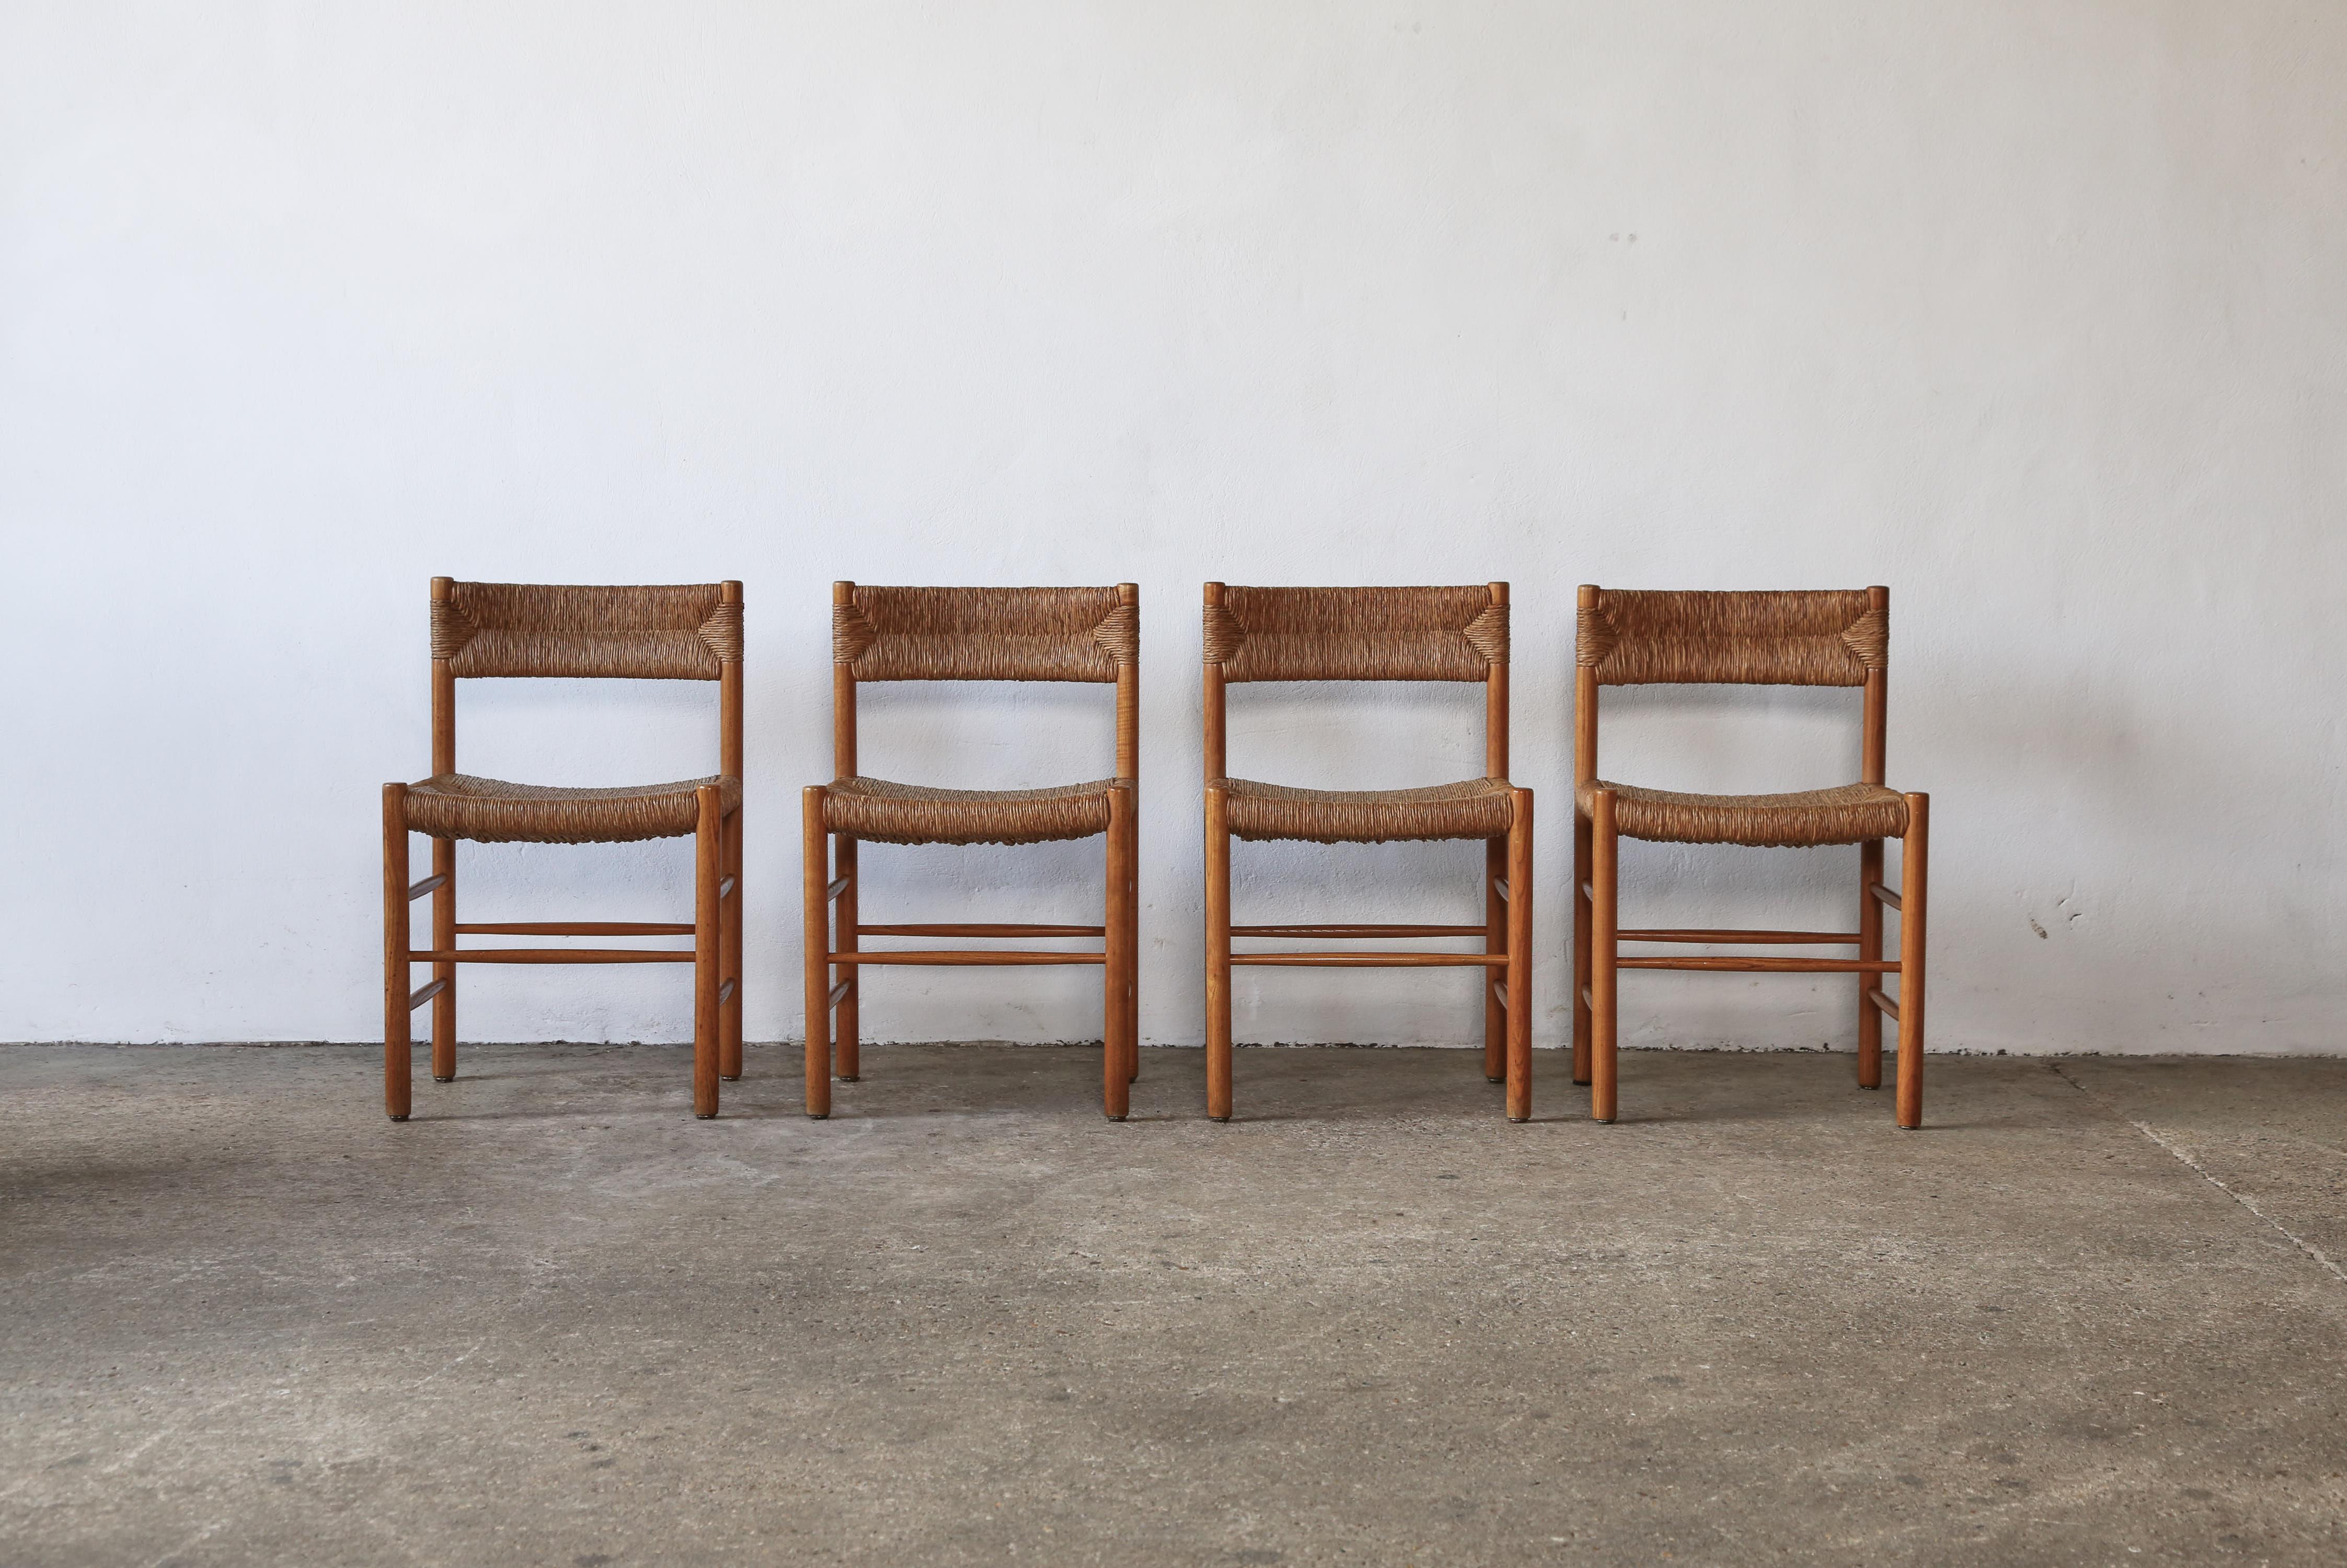 Ensemble de quatre chaises originales Charlotte Perriand / Robert Sentou Dordogne, France, années 1960. Sièges et dossiers en jonc d'origine en très bon état.  Rarement trouvé en aussi bon état d'origine en lot de 4. Livraison rapide dans le monde